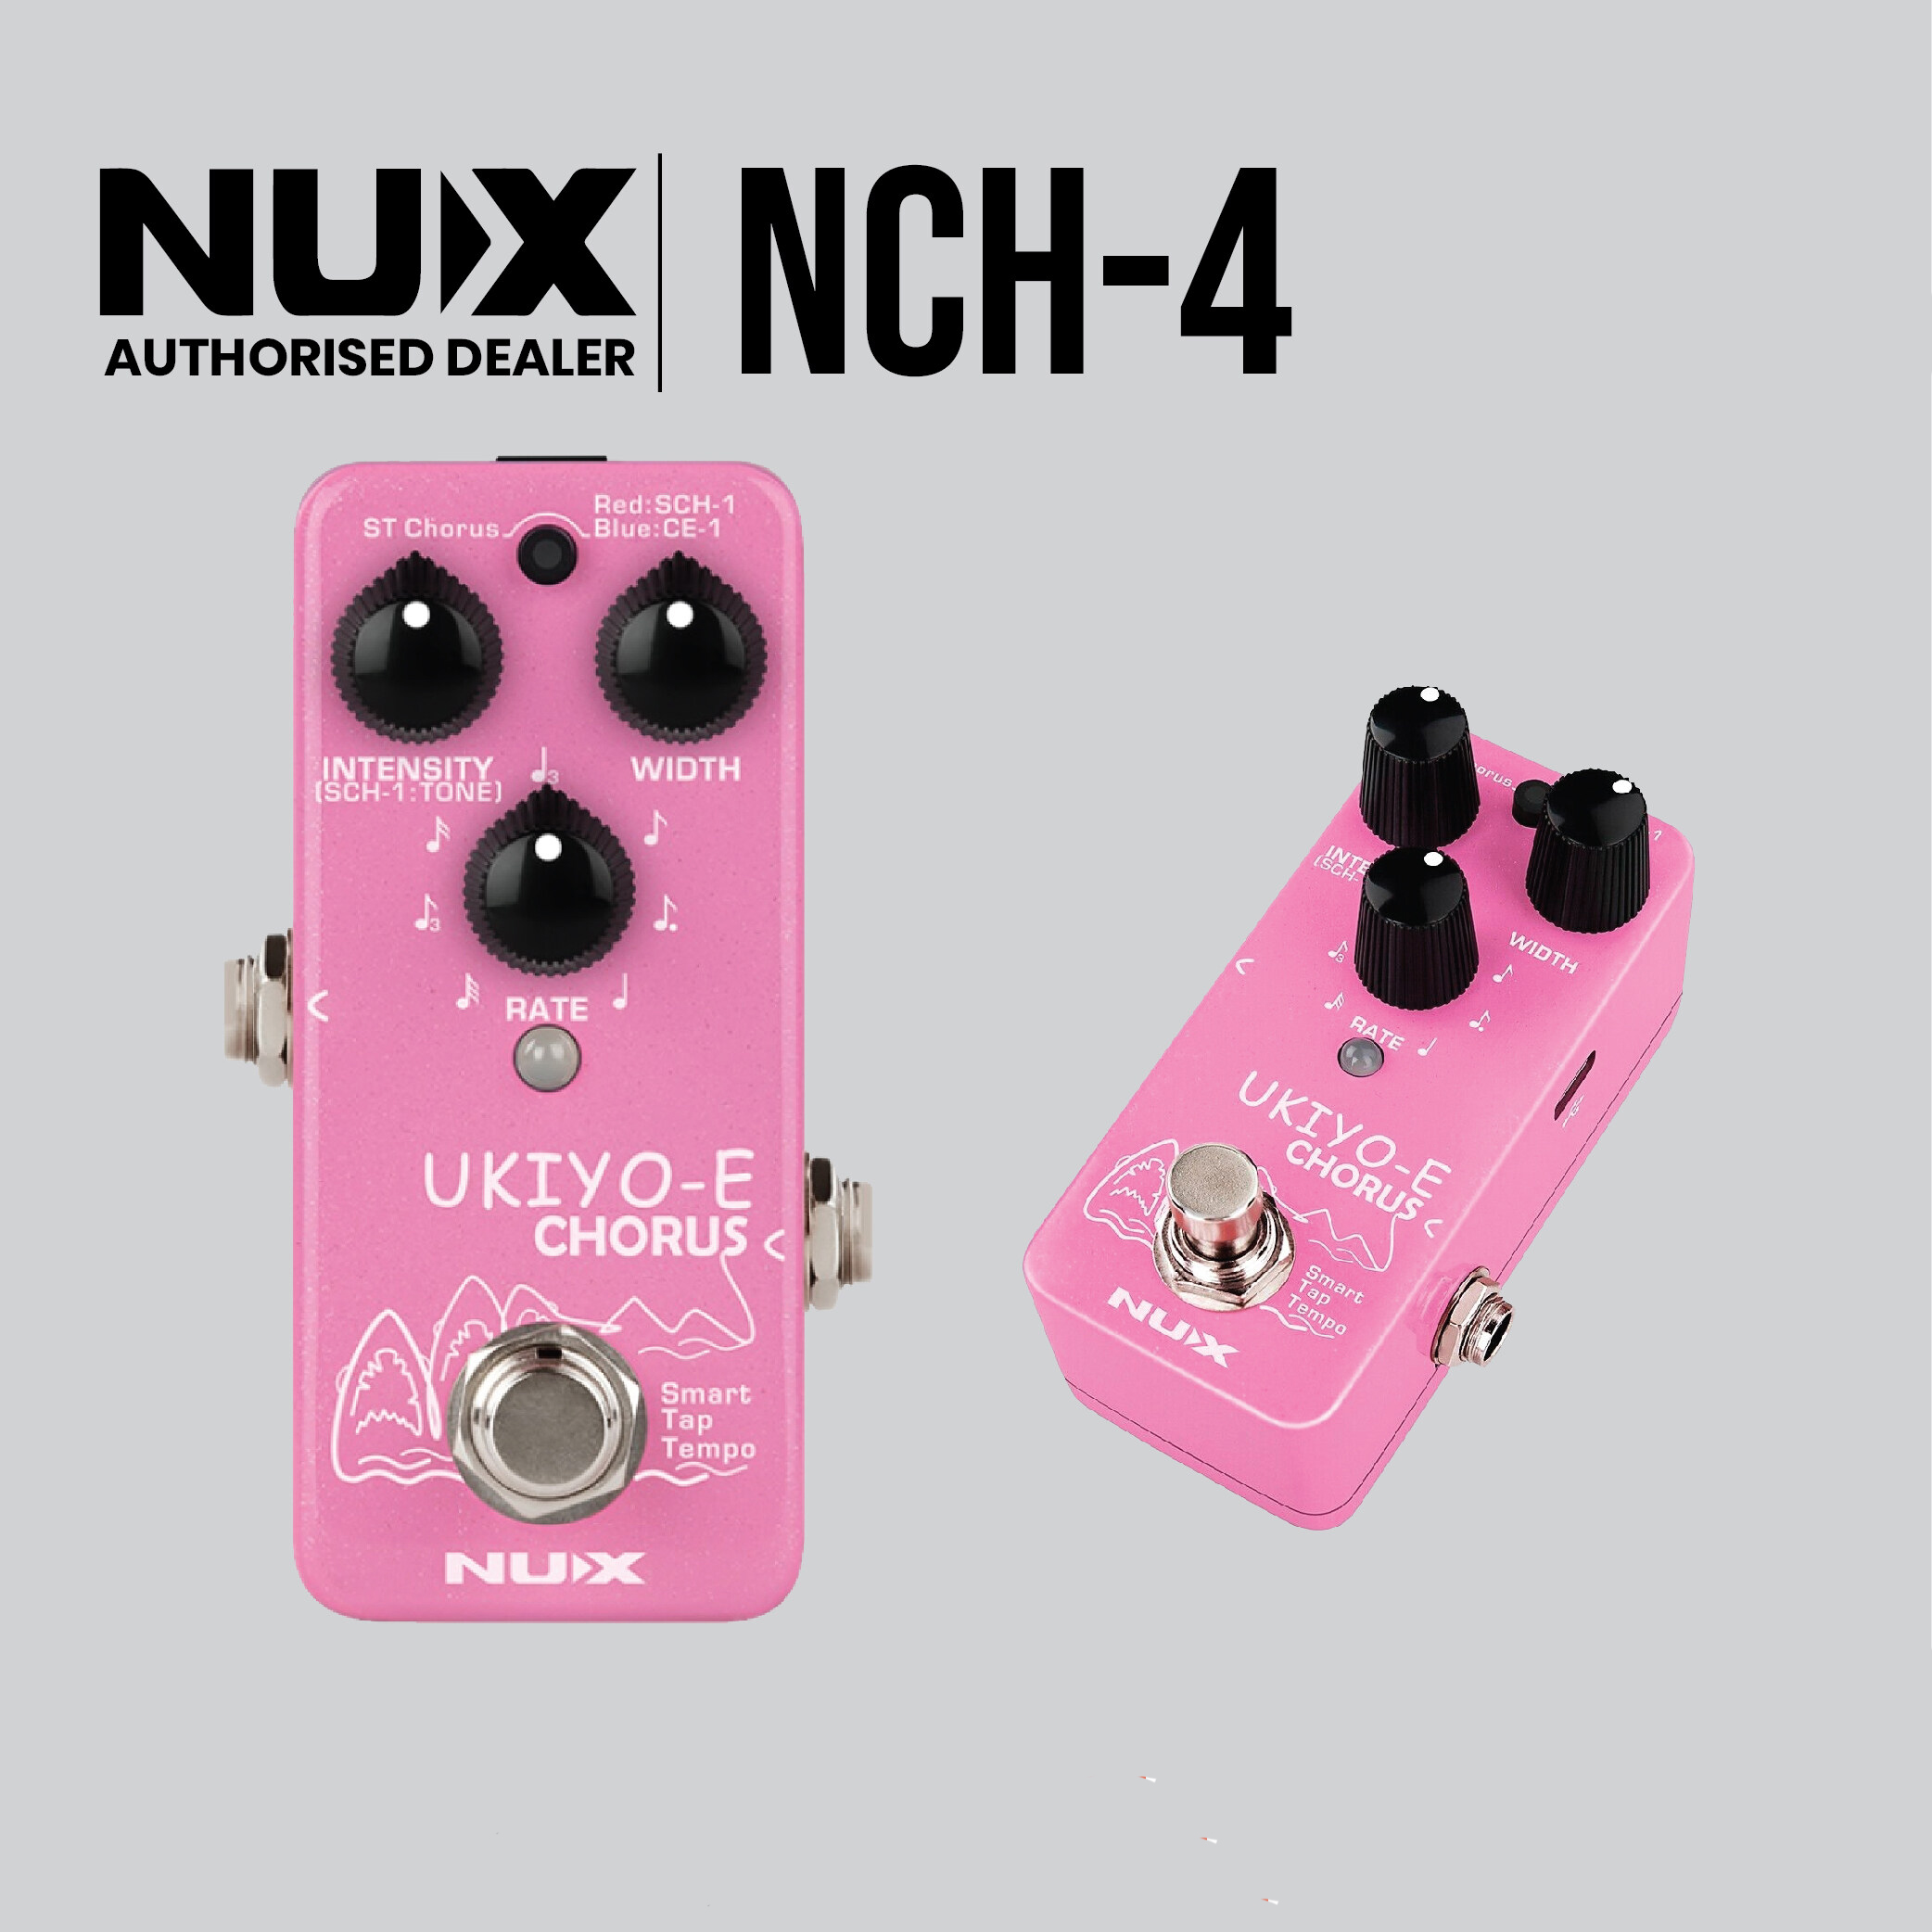 NUX NCH-4 UKIYO-E Mini Chorus Guitar Effects Pedal